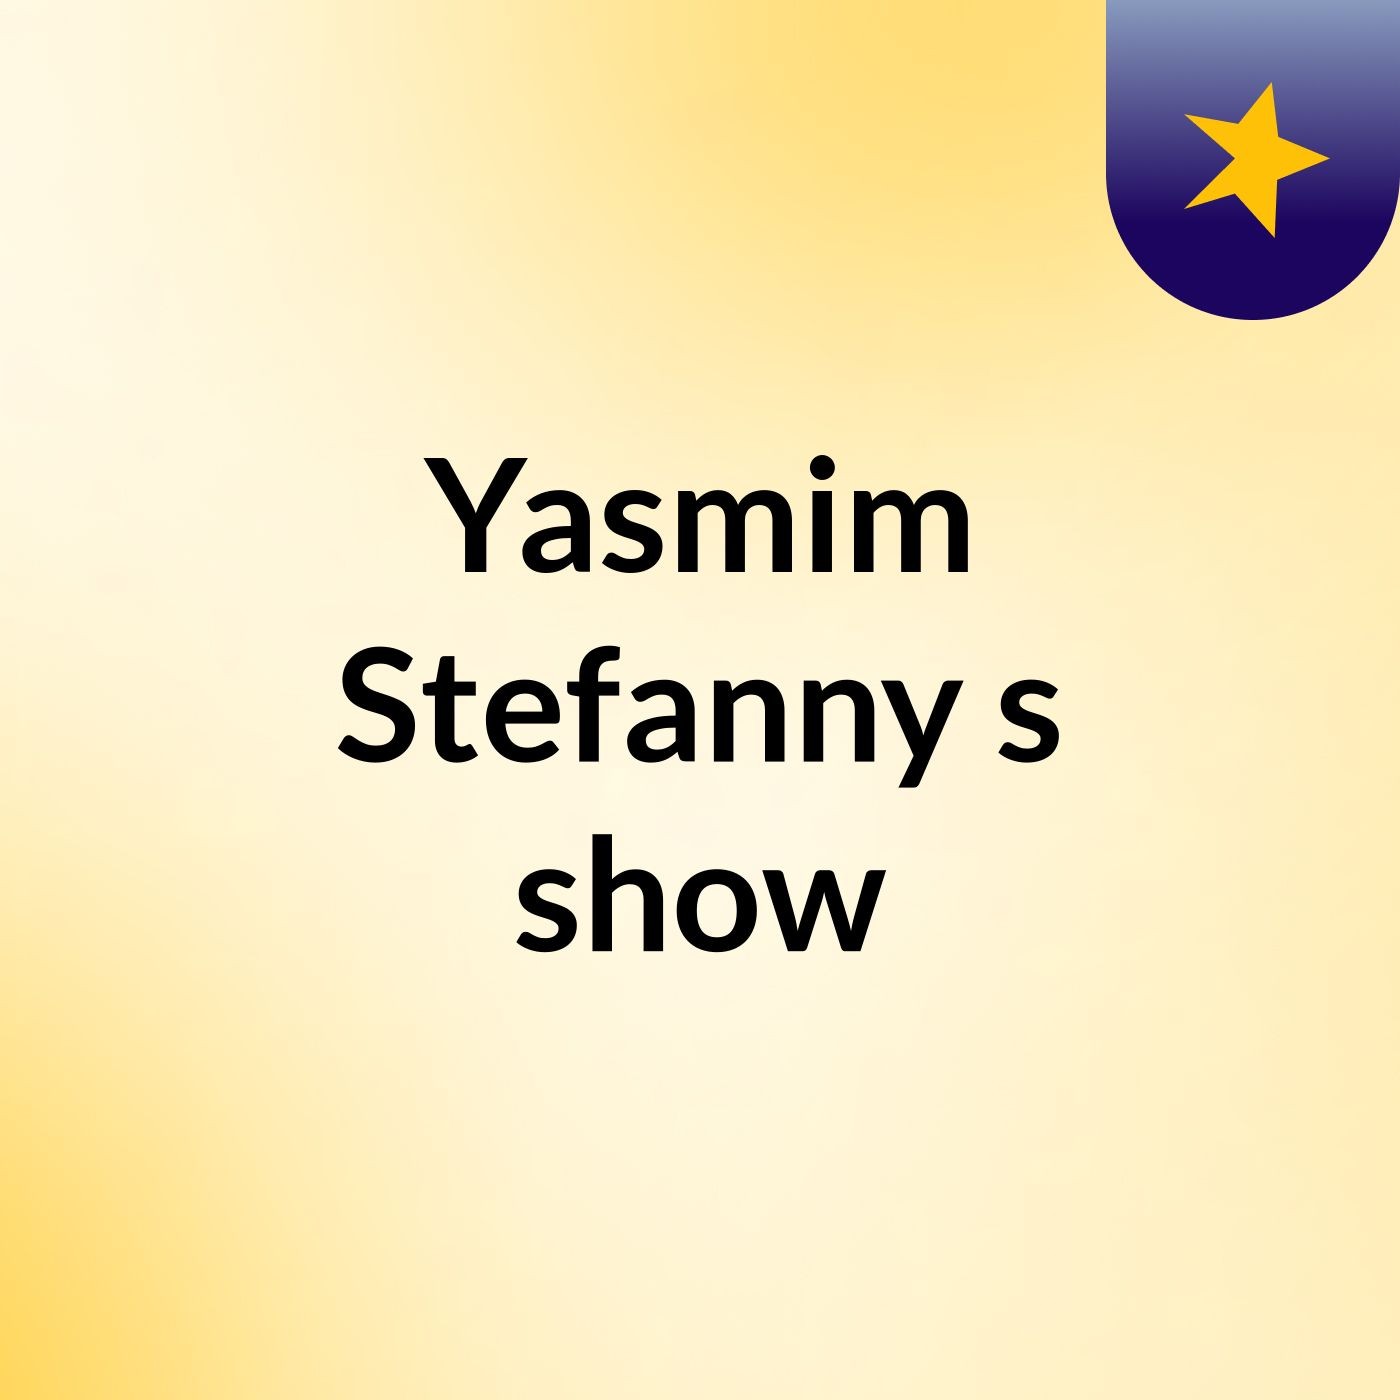 Yasmim Stefanny's show